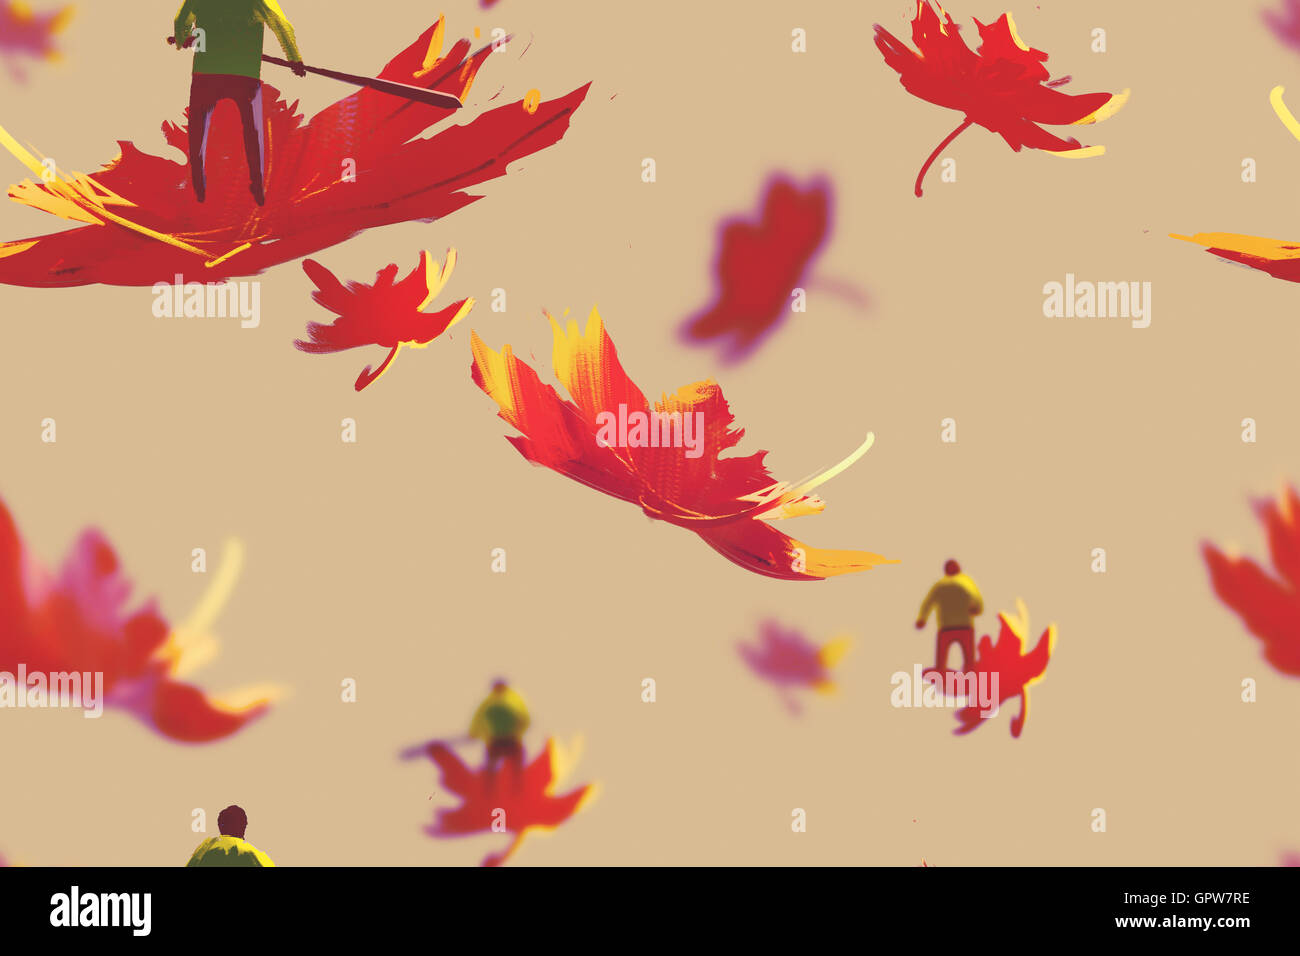 Patrón sin fisuras de los pequeños hombres en hojas de arce,otoño concepto,ilustración pintura Foto de stock